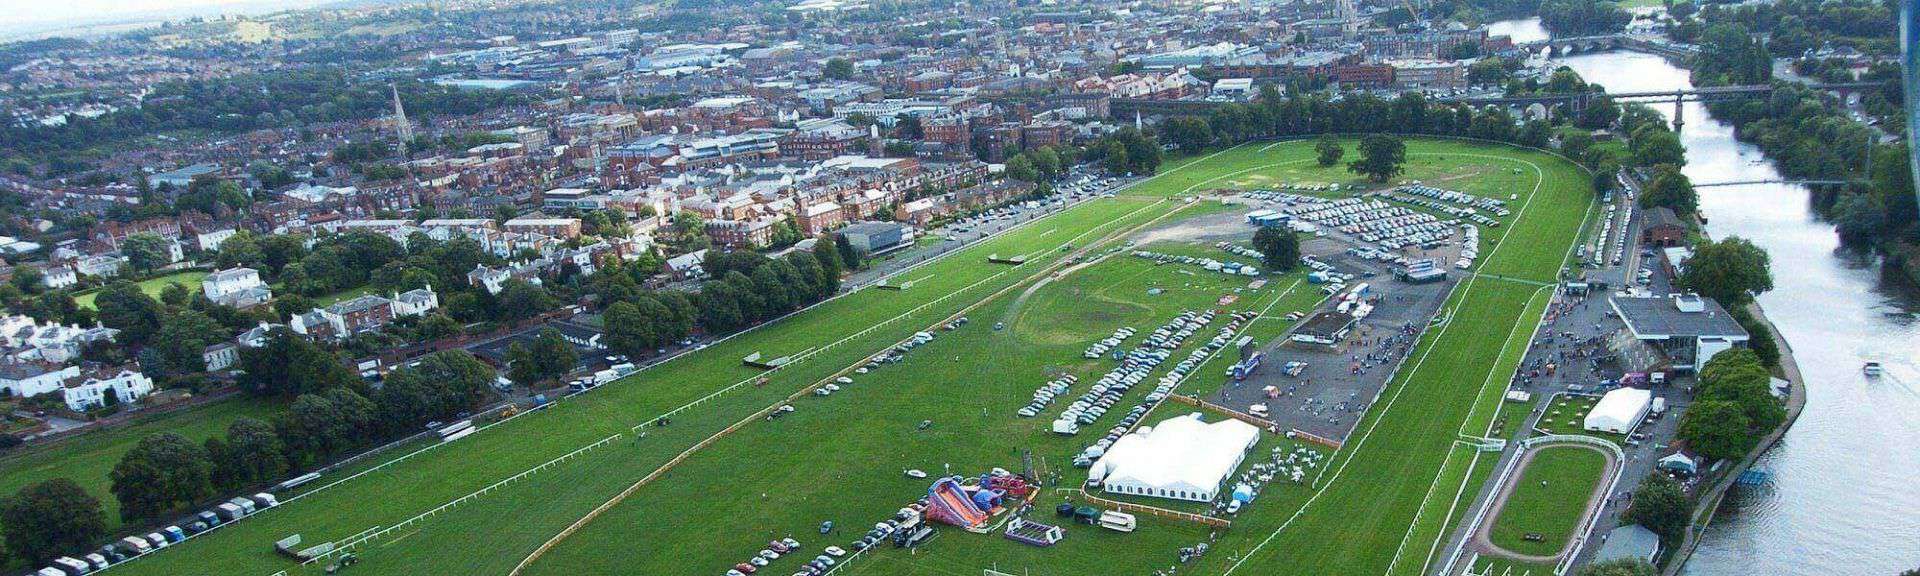 Worcester Racecourse in UK